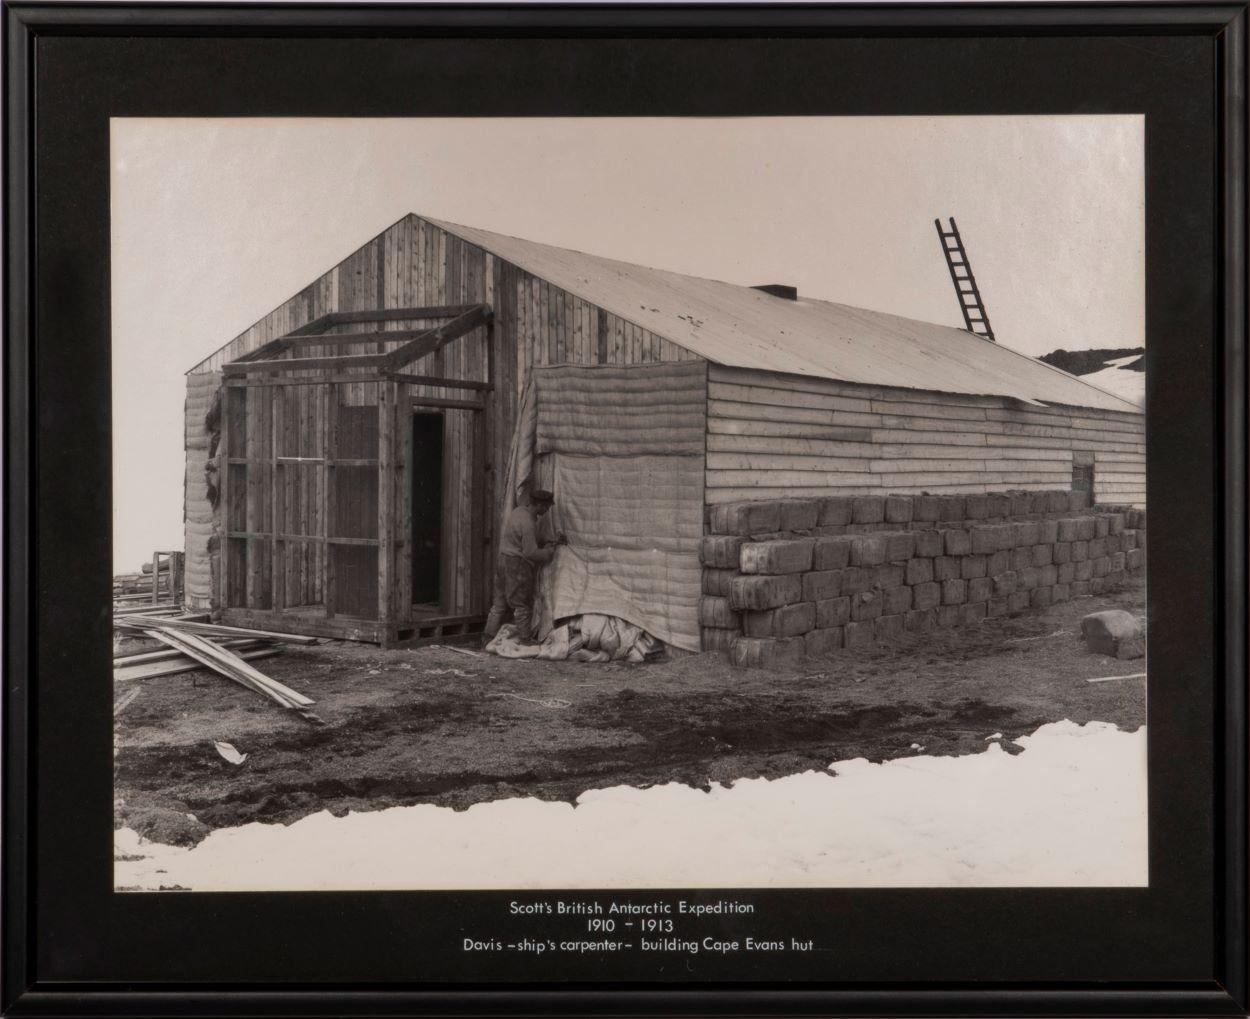 Davis - ships carpenter - building Cape Evans hut. 